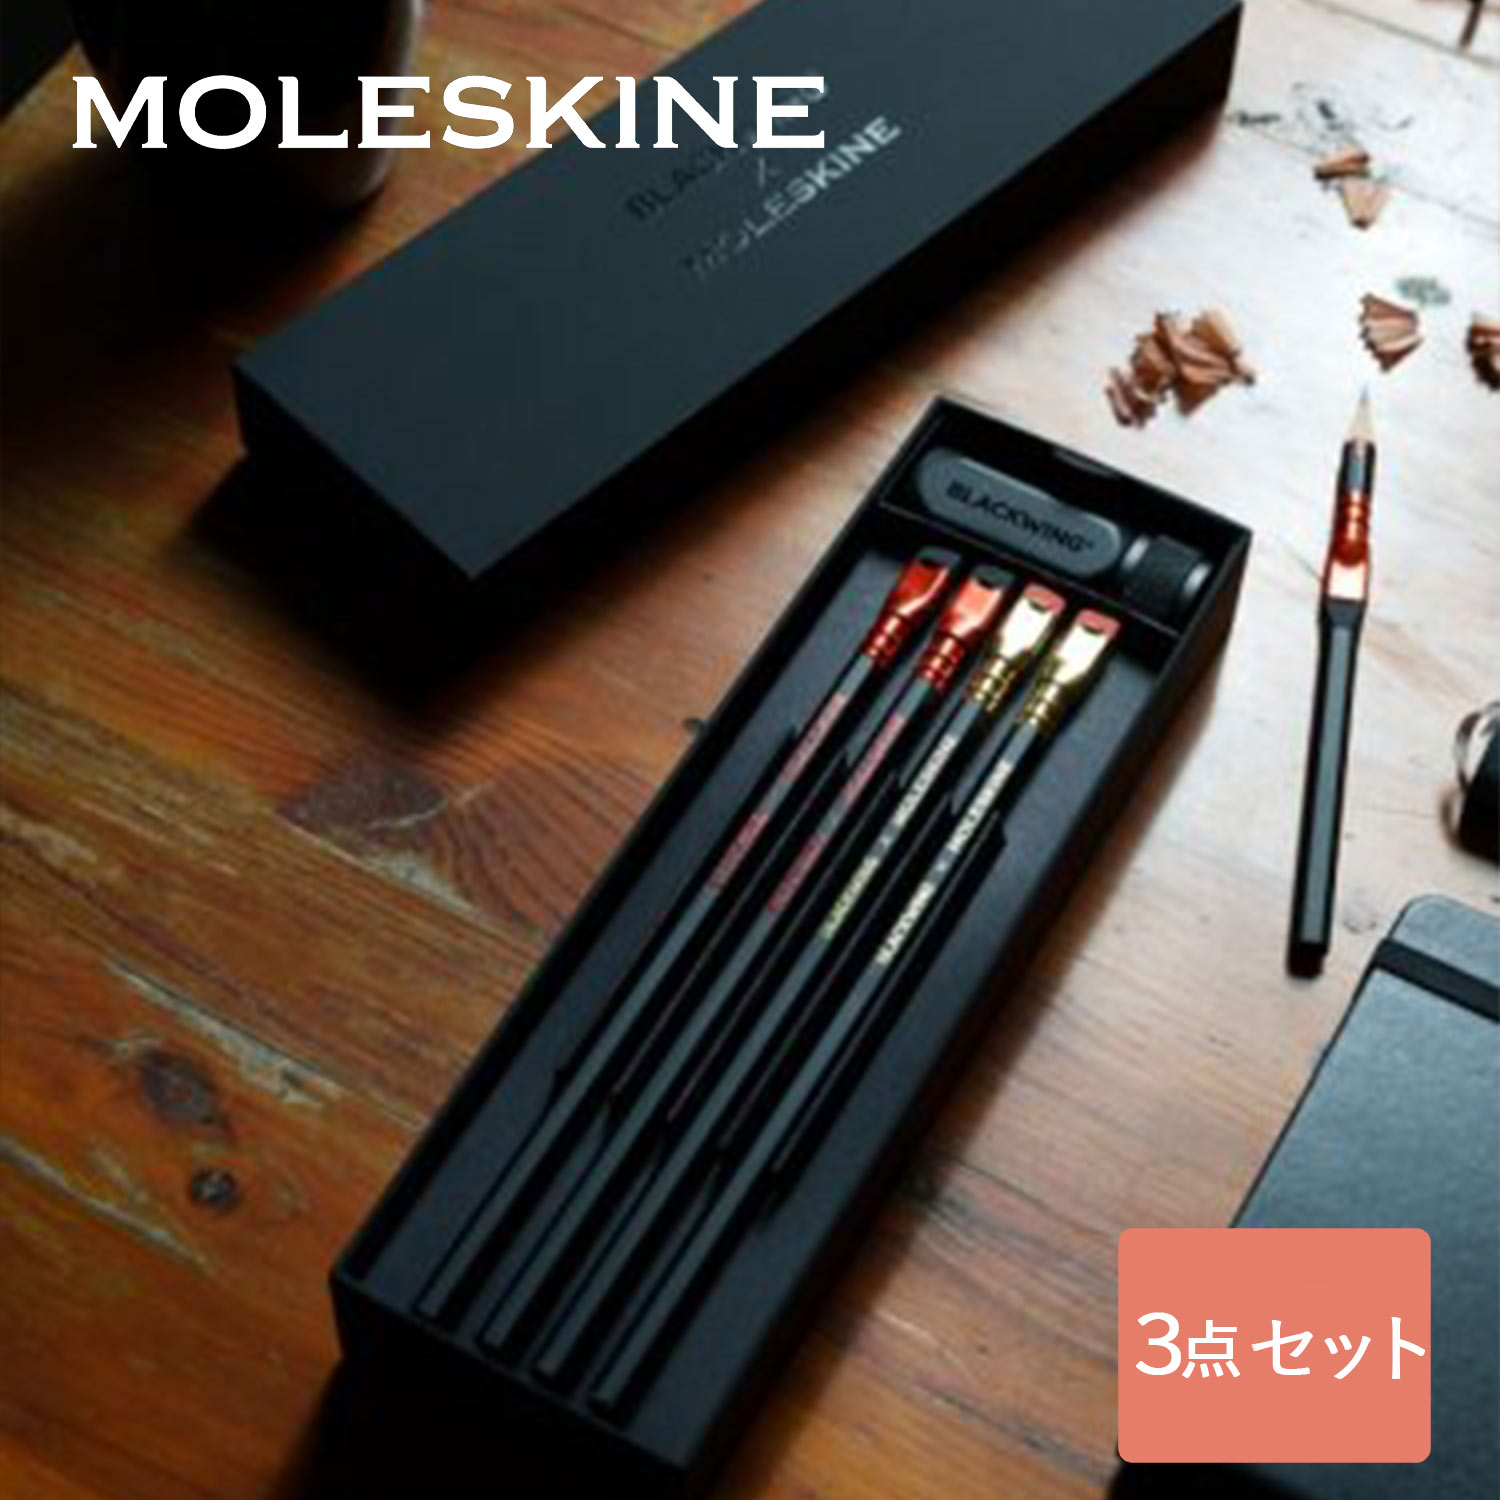  モレスキン × ブラックウィング 鉛筆 + シャープナー セット